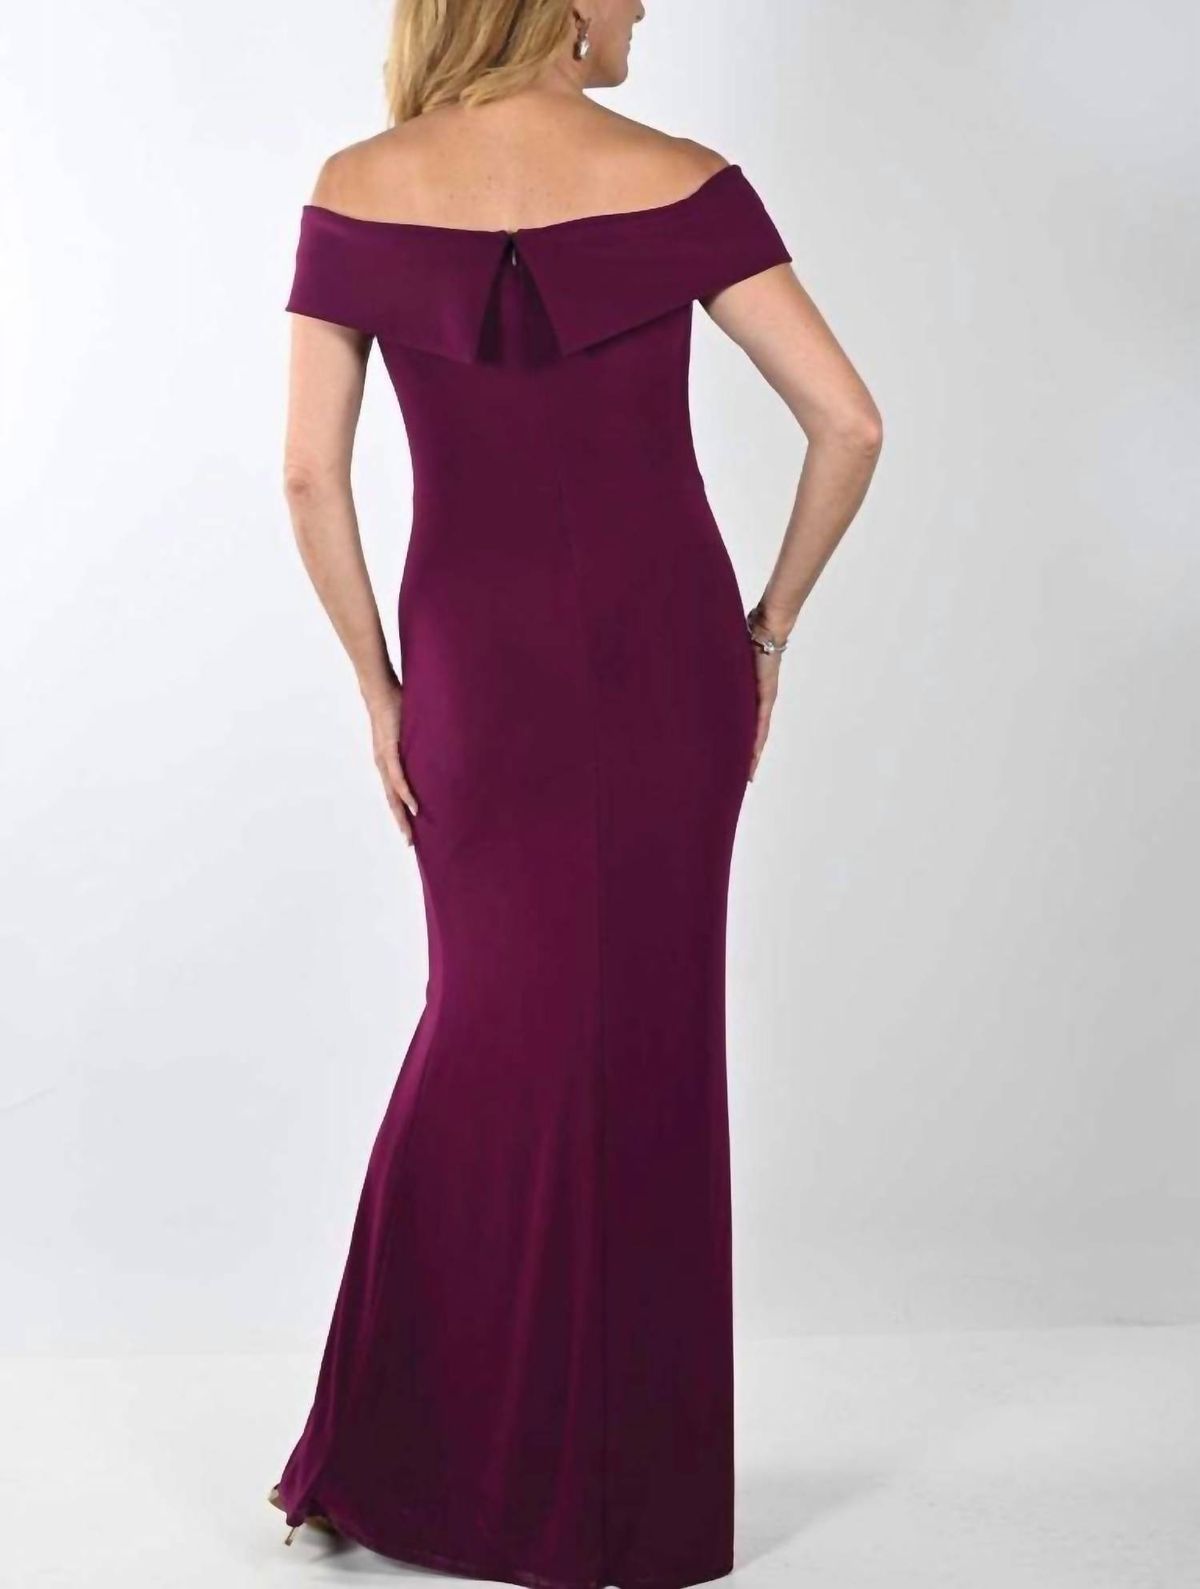 Style 1-2316663915-98 Frank Lyman Size 10 Purple Side Slit Dress on Queenly